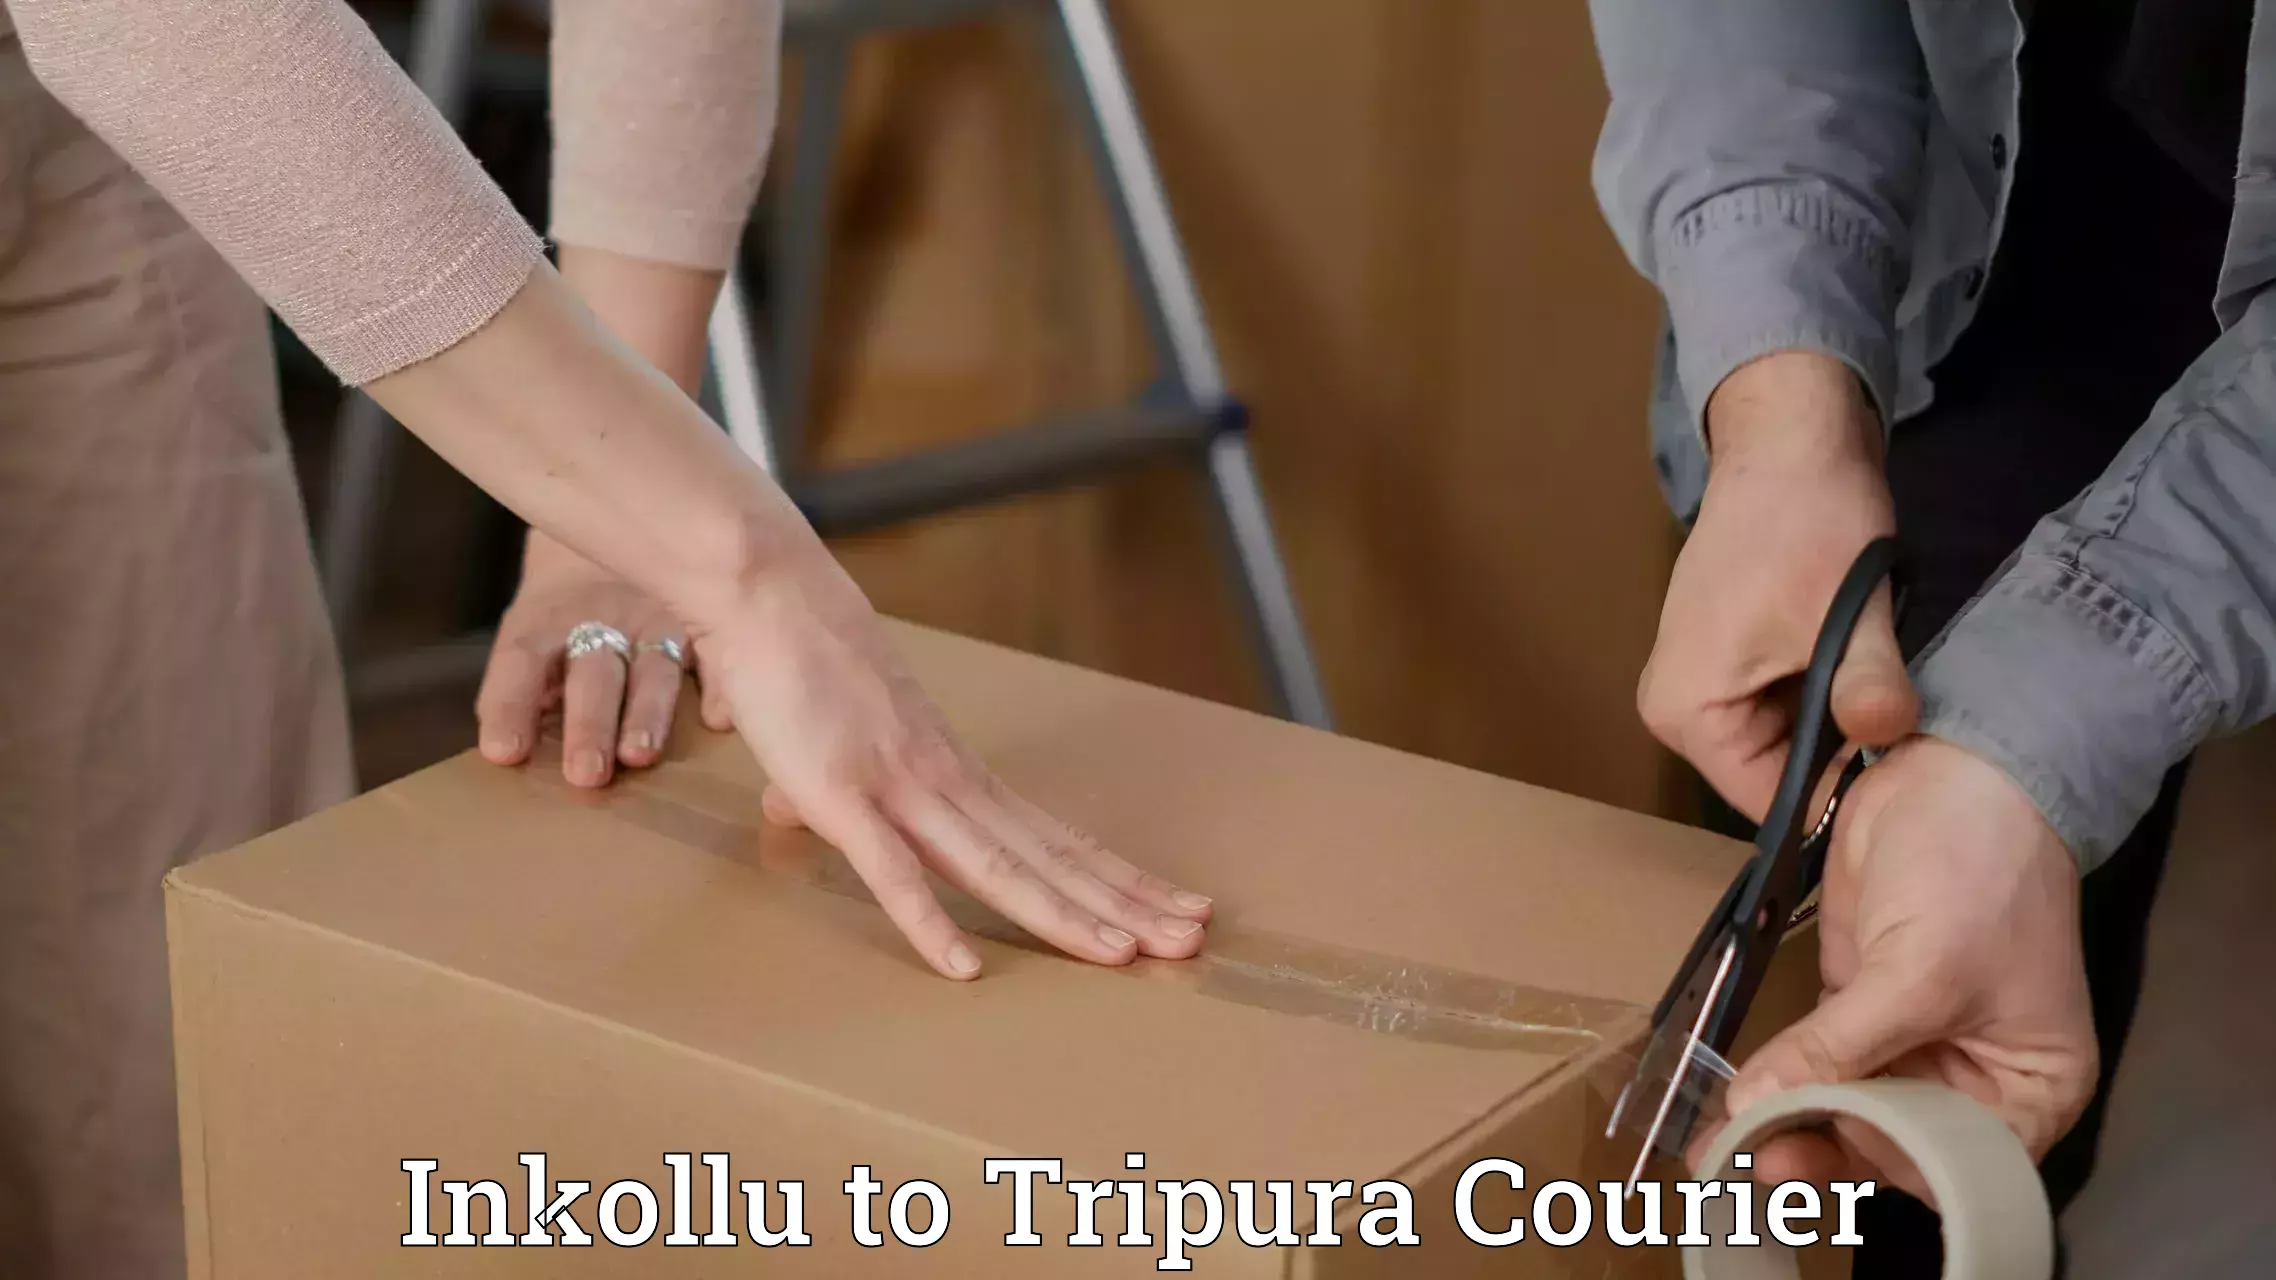 Quick dispatch service Inkollu to Tripura